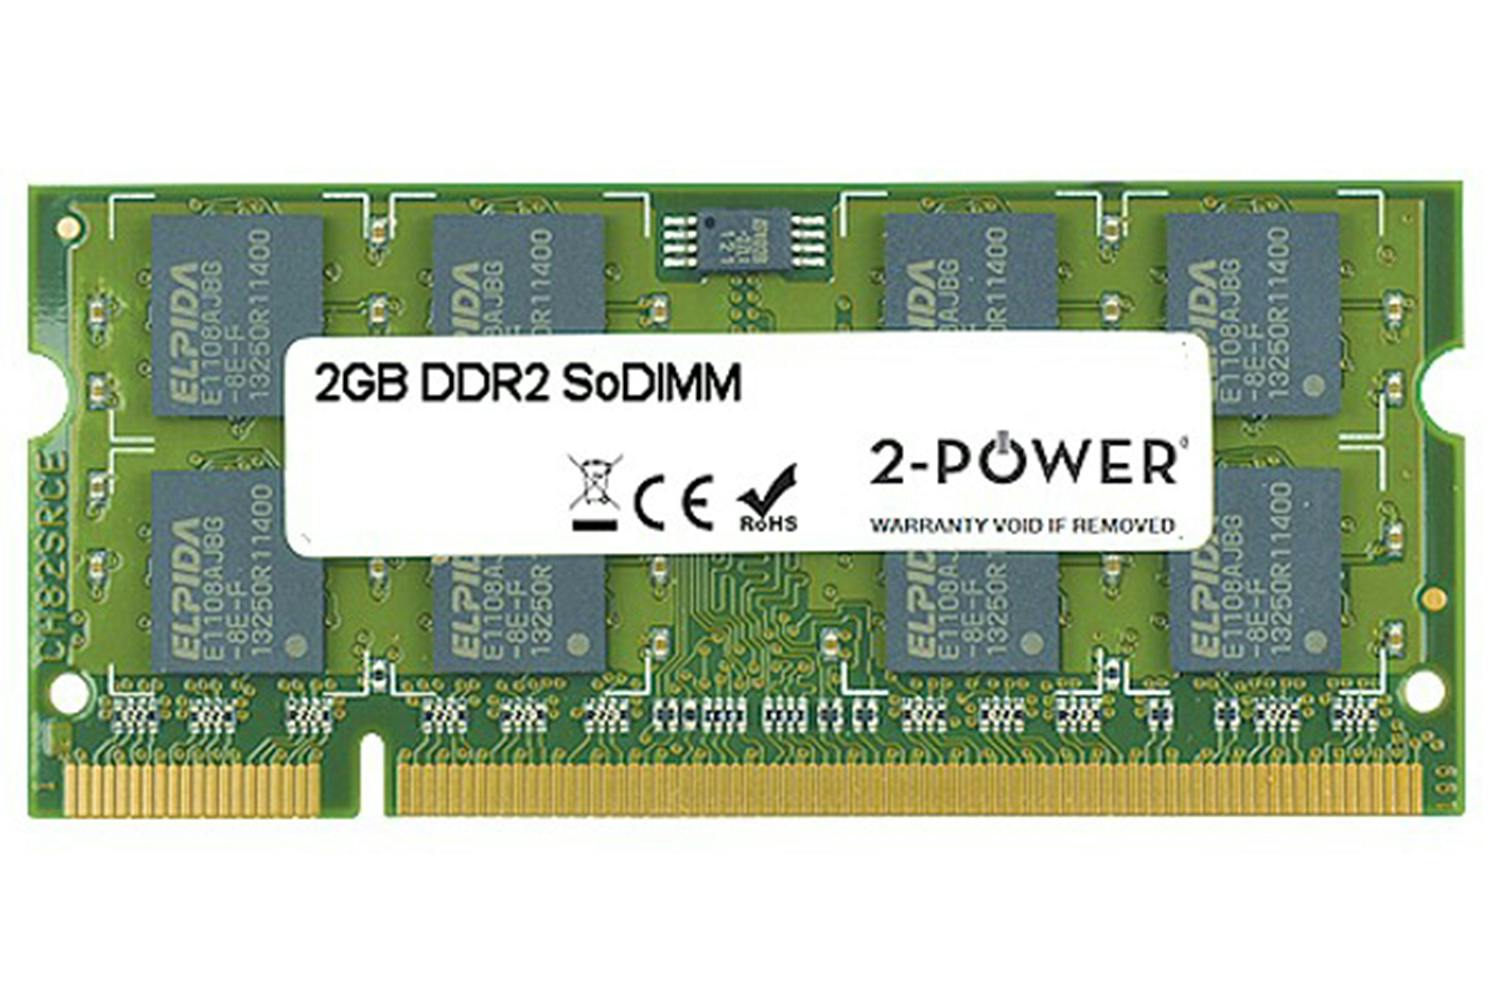 Sodimm ddr3 8gb купить. SODIMM ddr2 2gb. Ddr2 4 GB SODIMM so. Ddr3 4gb Memory Power. So DIMM ddr3 4gb.